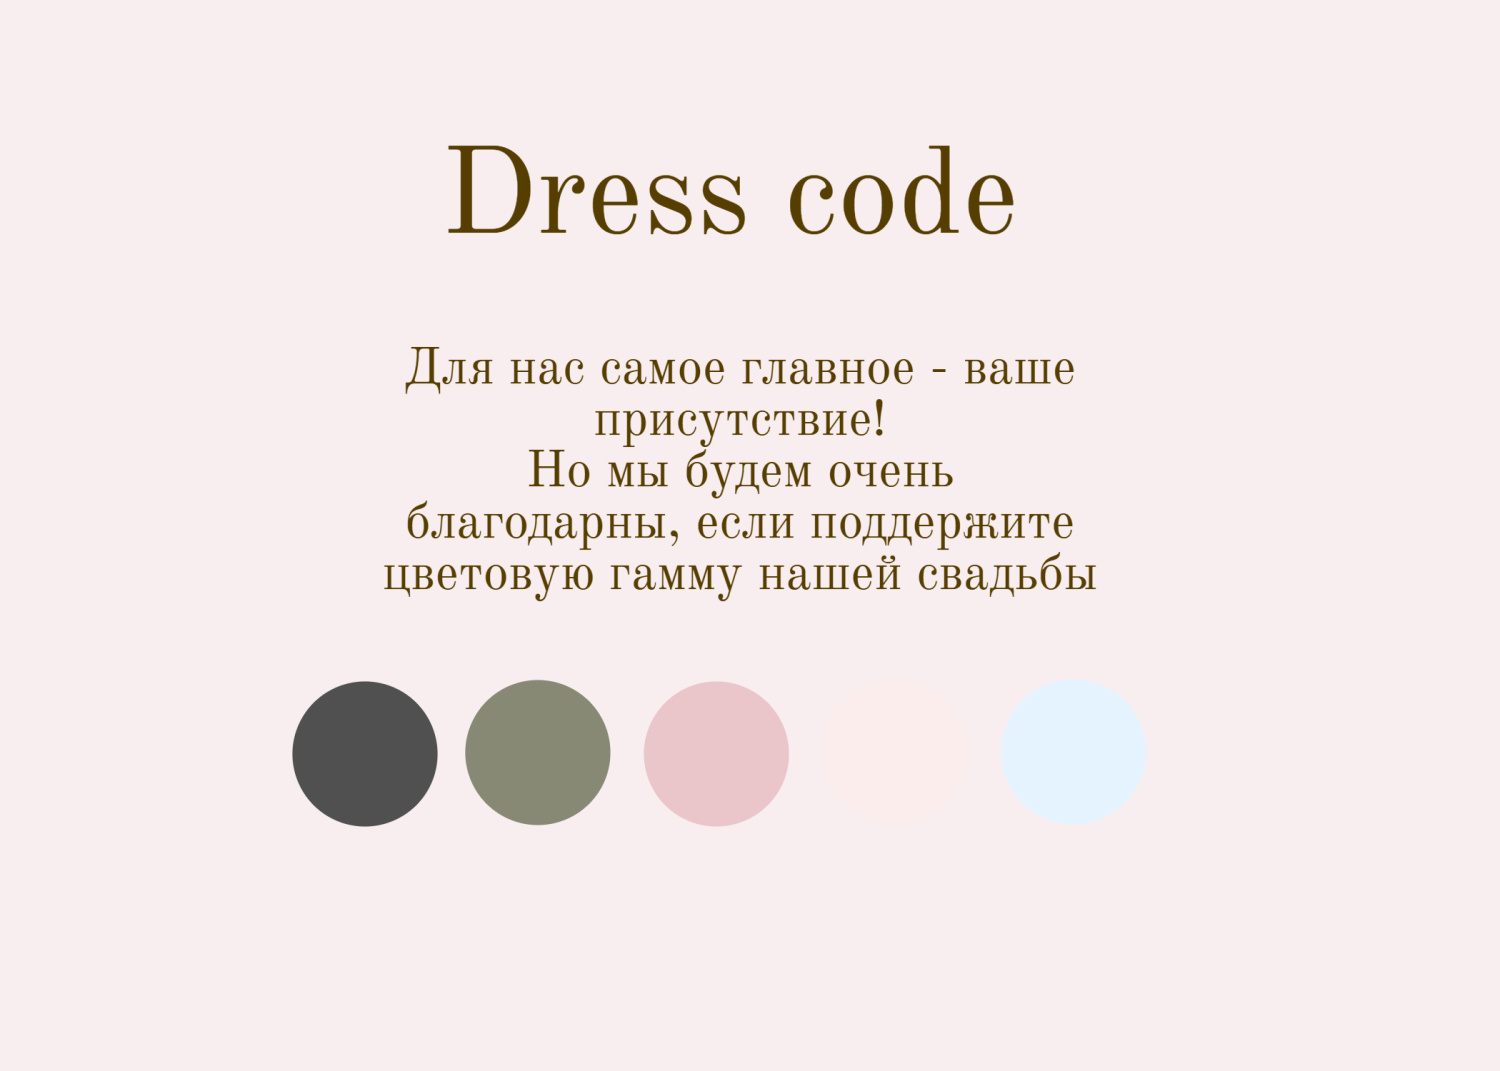 Дресс-код в стиле классическое розовое с инициалами